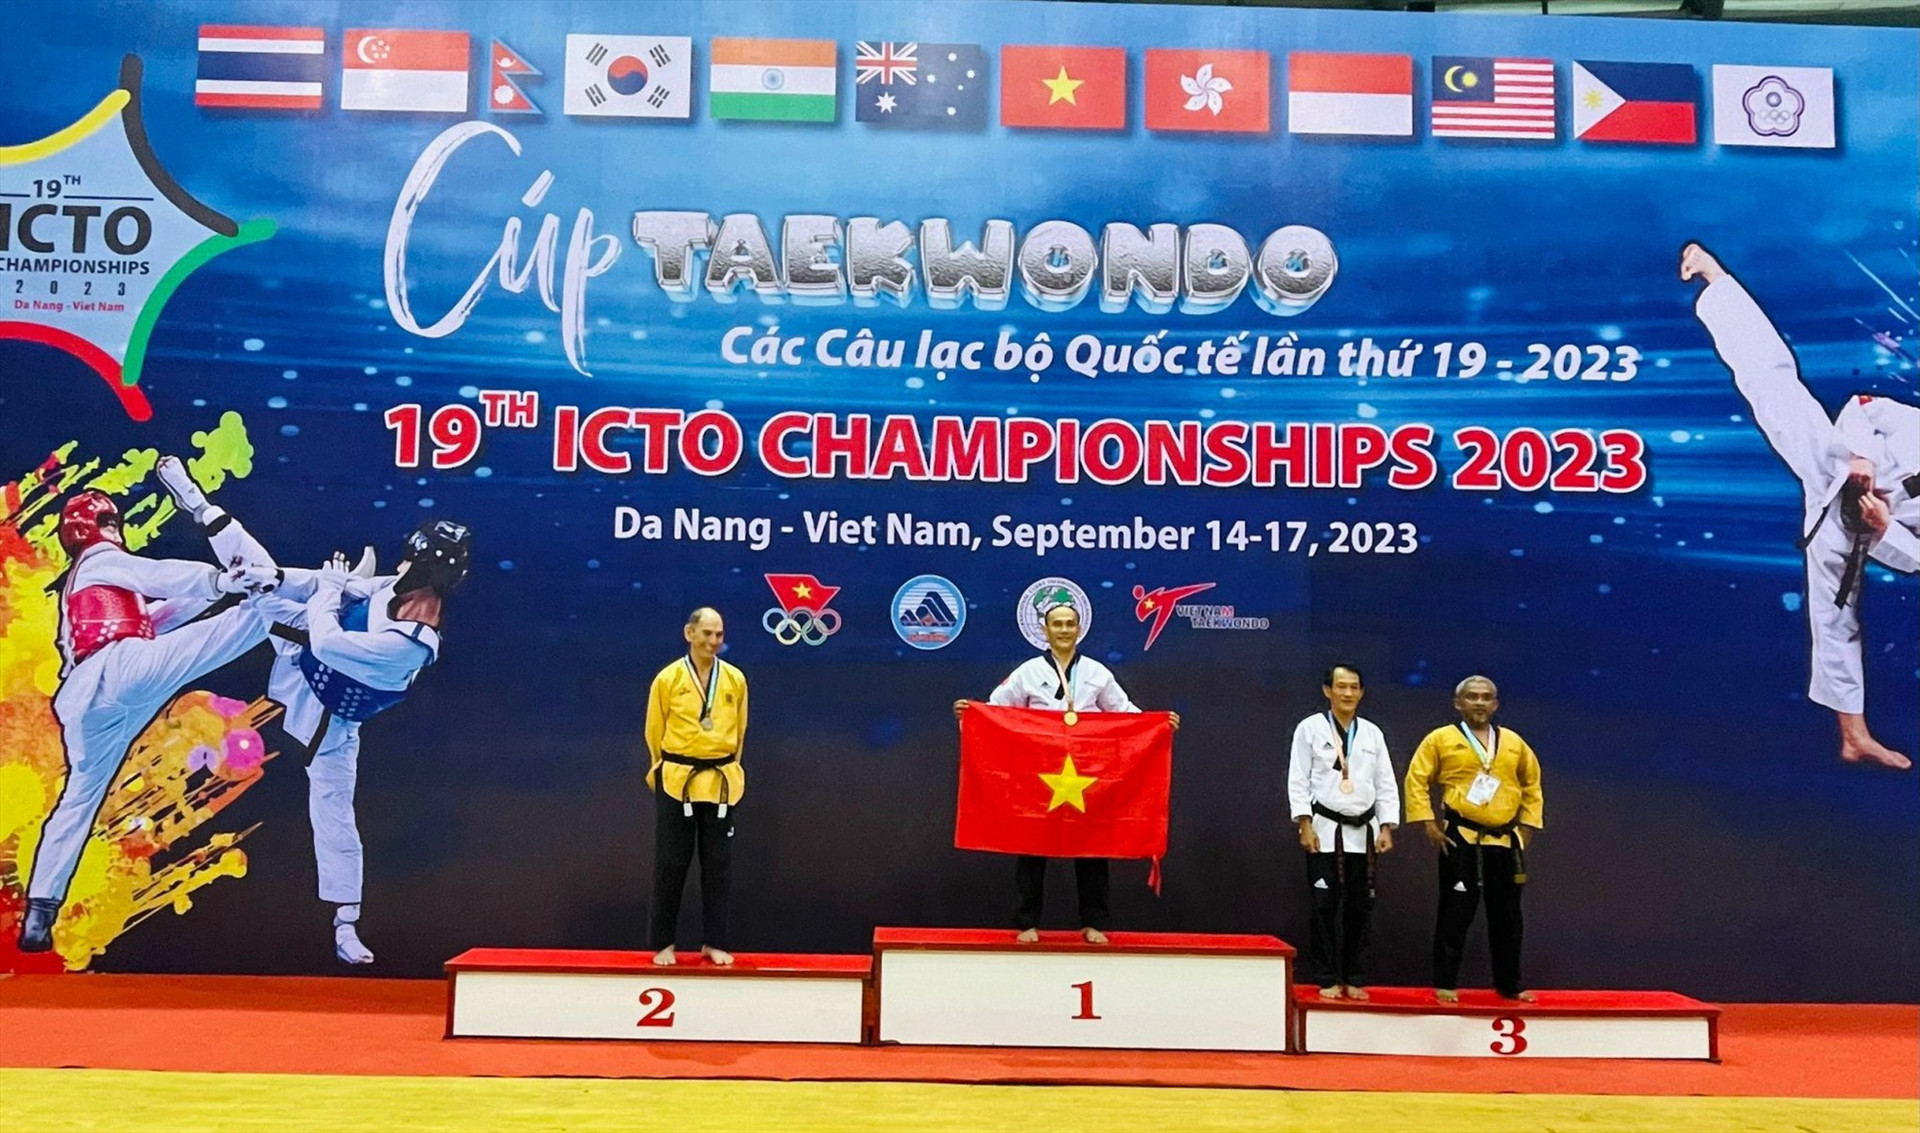 Võ sư Trần Trung Dũng nhận HCV tại giải cúp Taekwondo các CLB quốc tế lần thứ 19. Ảnh: T.Dũng